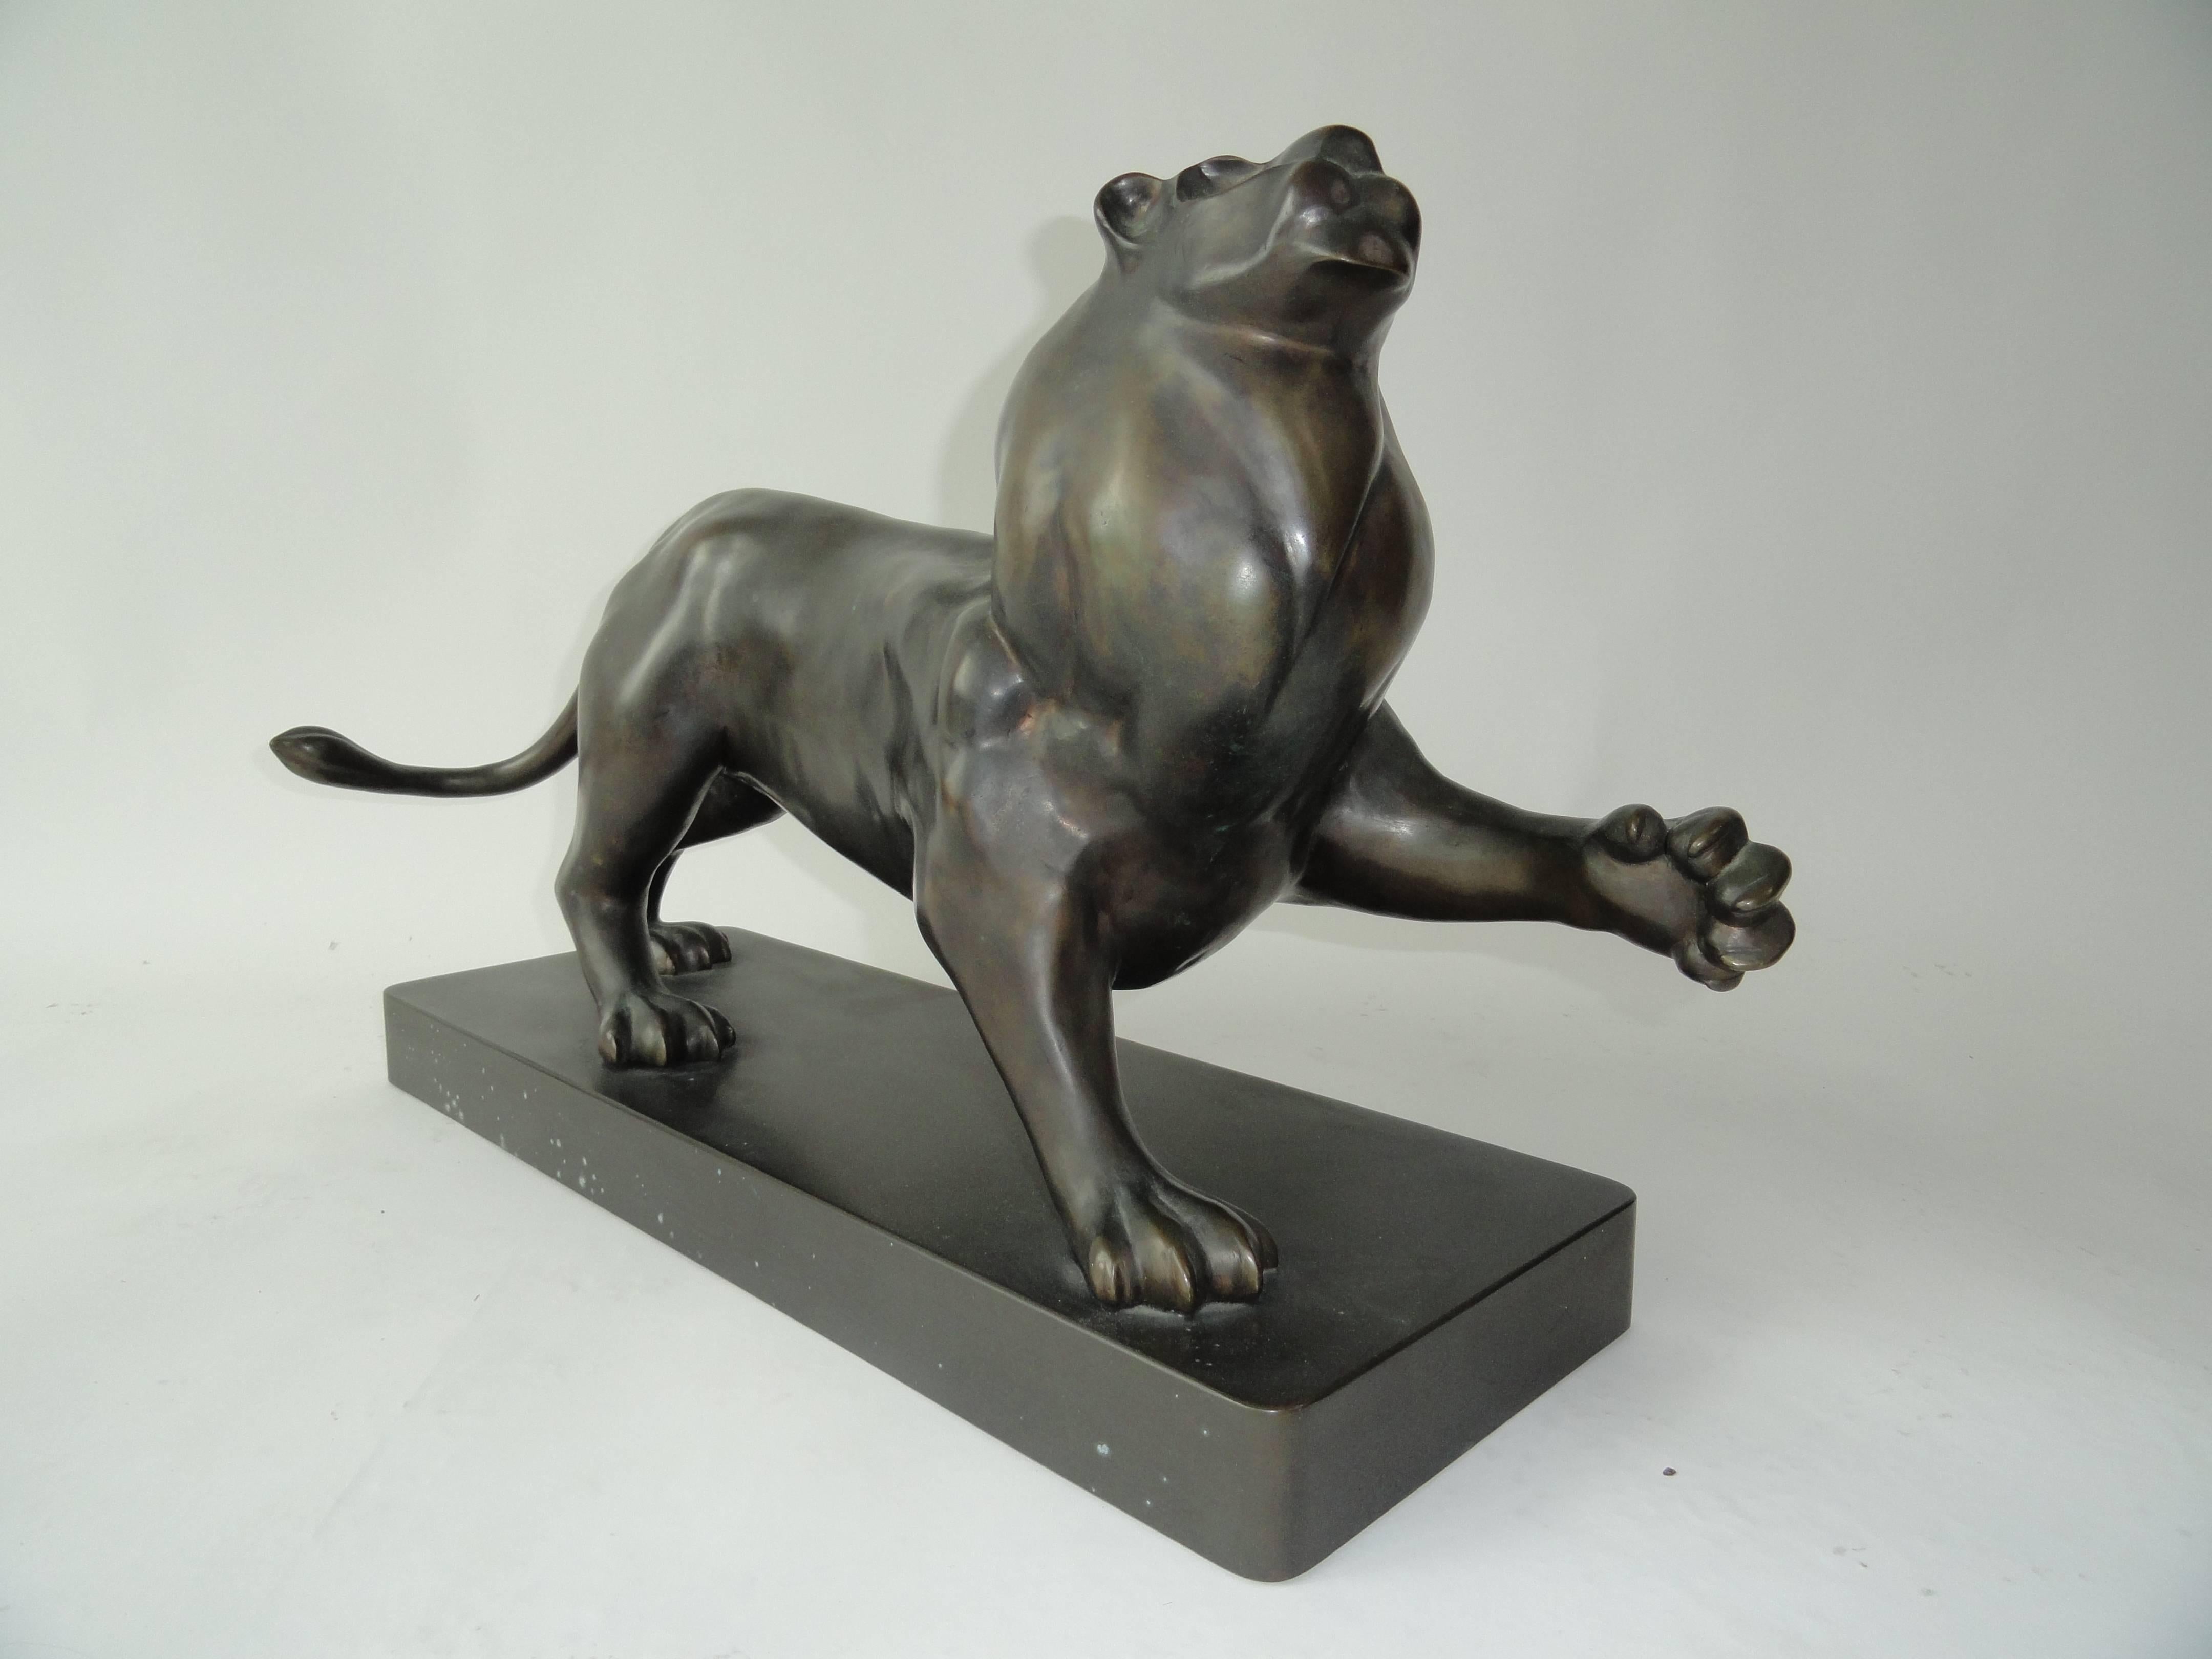 Signed Estevez by Roberto Estevez, lion in bronze. Sculpture designed for Karl Springer, New York.  Model based on Pierre-Jules Mene's bronze animal sculptures of the 19th century.